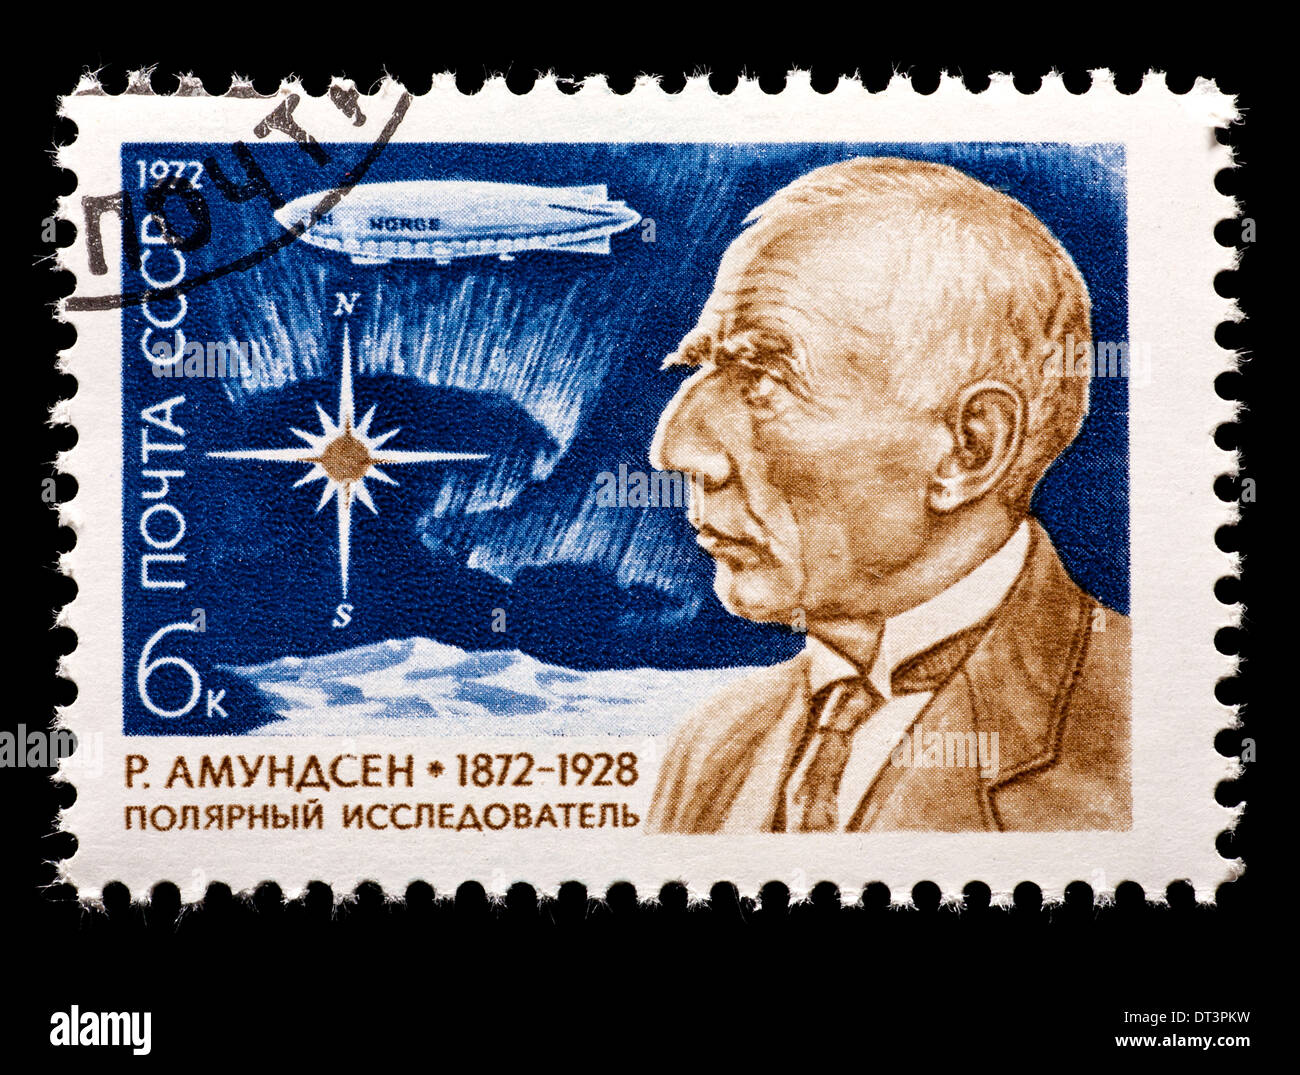 Briefmarke aus der Sowjetunion, die Darstellung von Roald Amundsen, Polarforscher aus Norwegen. Stockfoto